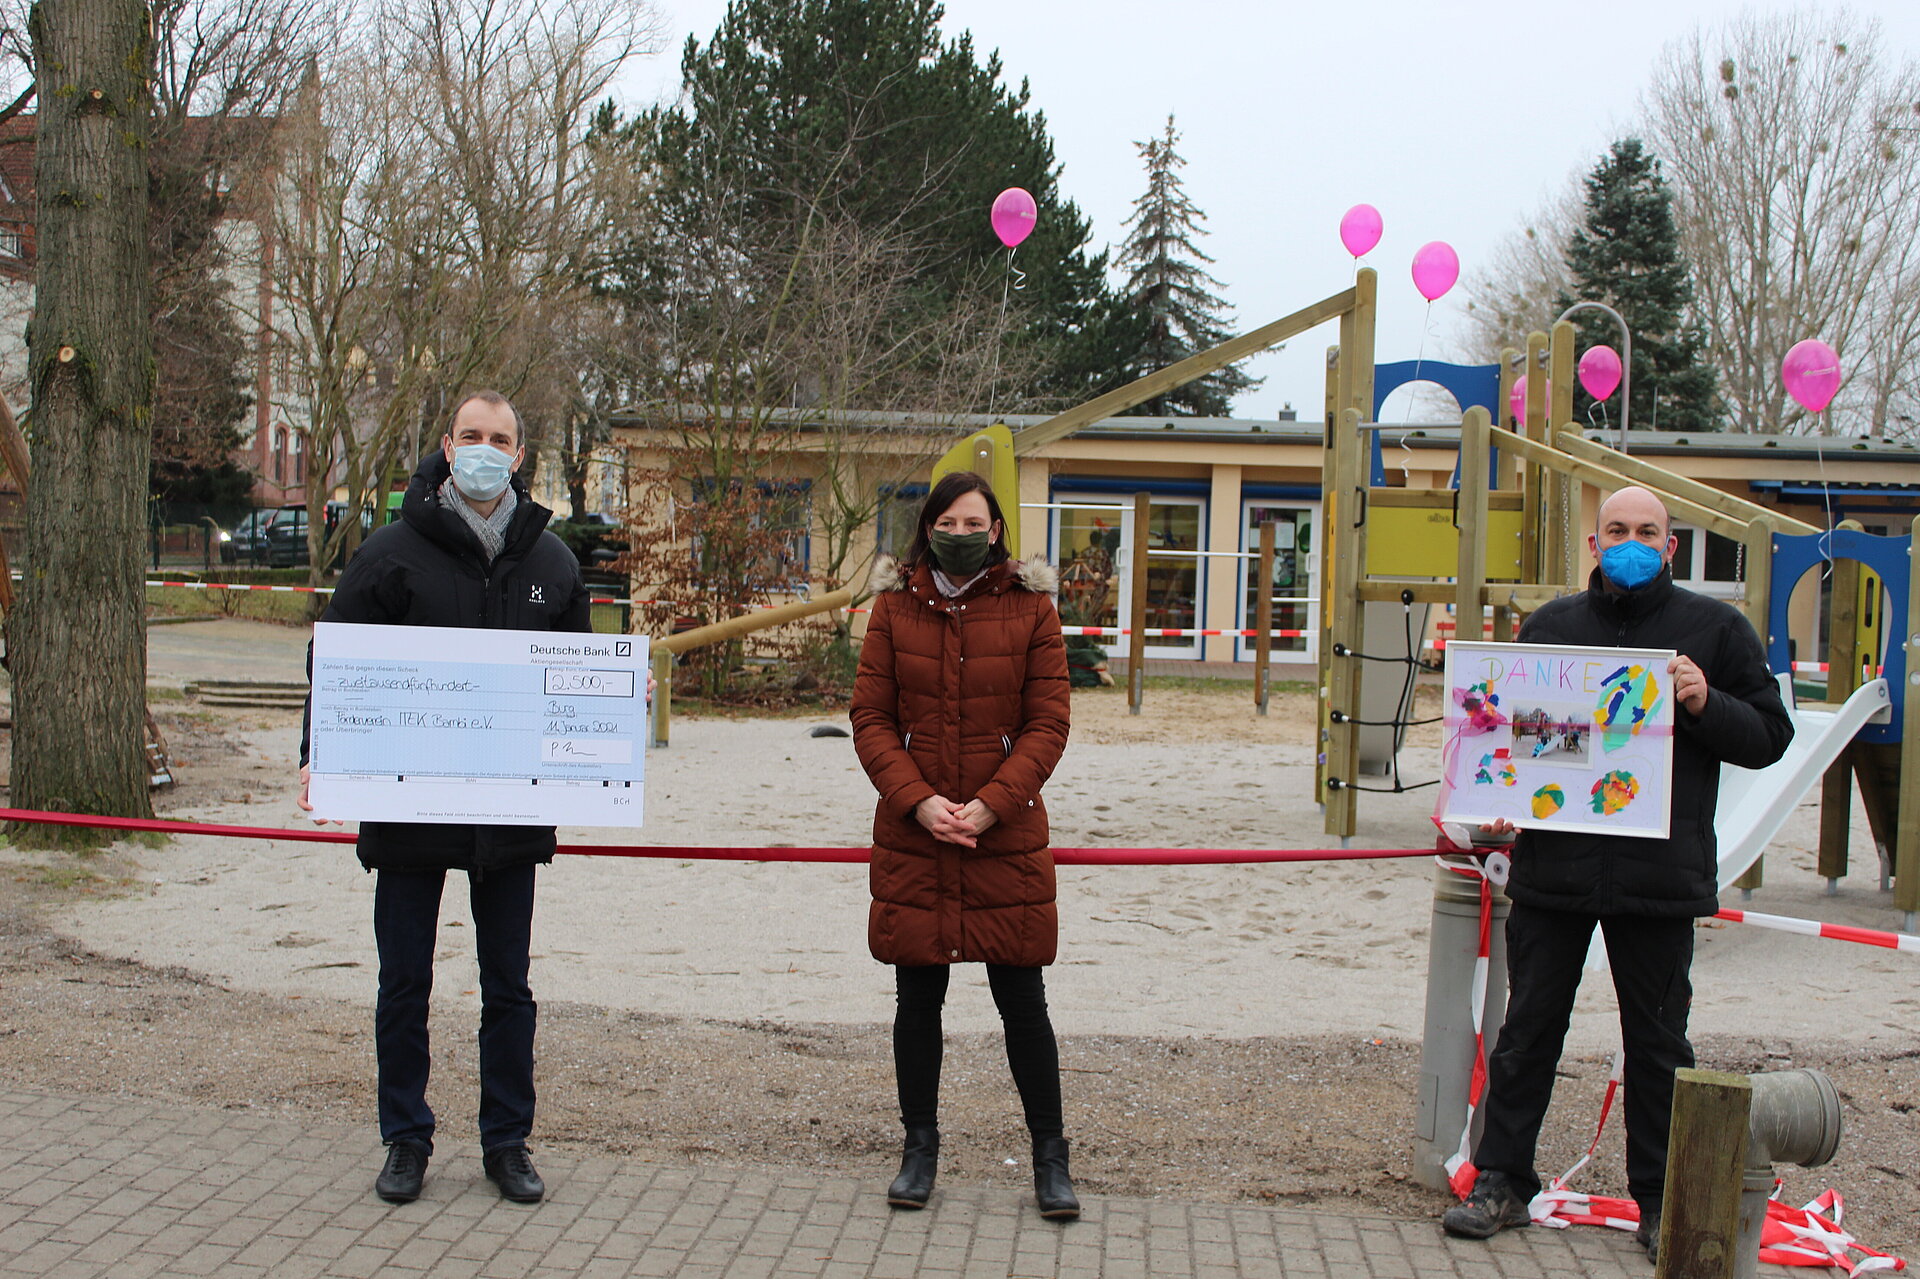 Im Januar 2021 spendete Progroup 2.500 Euro an die integrative Kindertagesstätte „Bambi“ in Burg. Mit der Spende konnte die Einrichtung viele Kinderwünsche zur Gestaltung des Spielplatzes erfüllen.